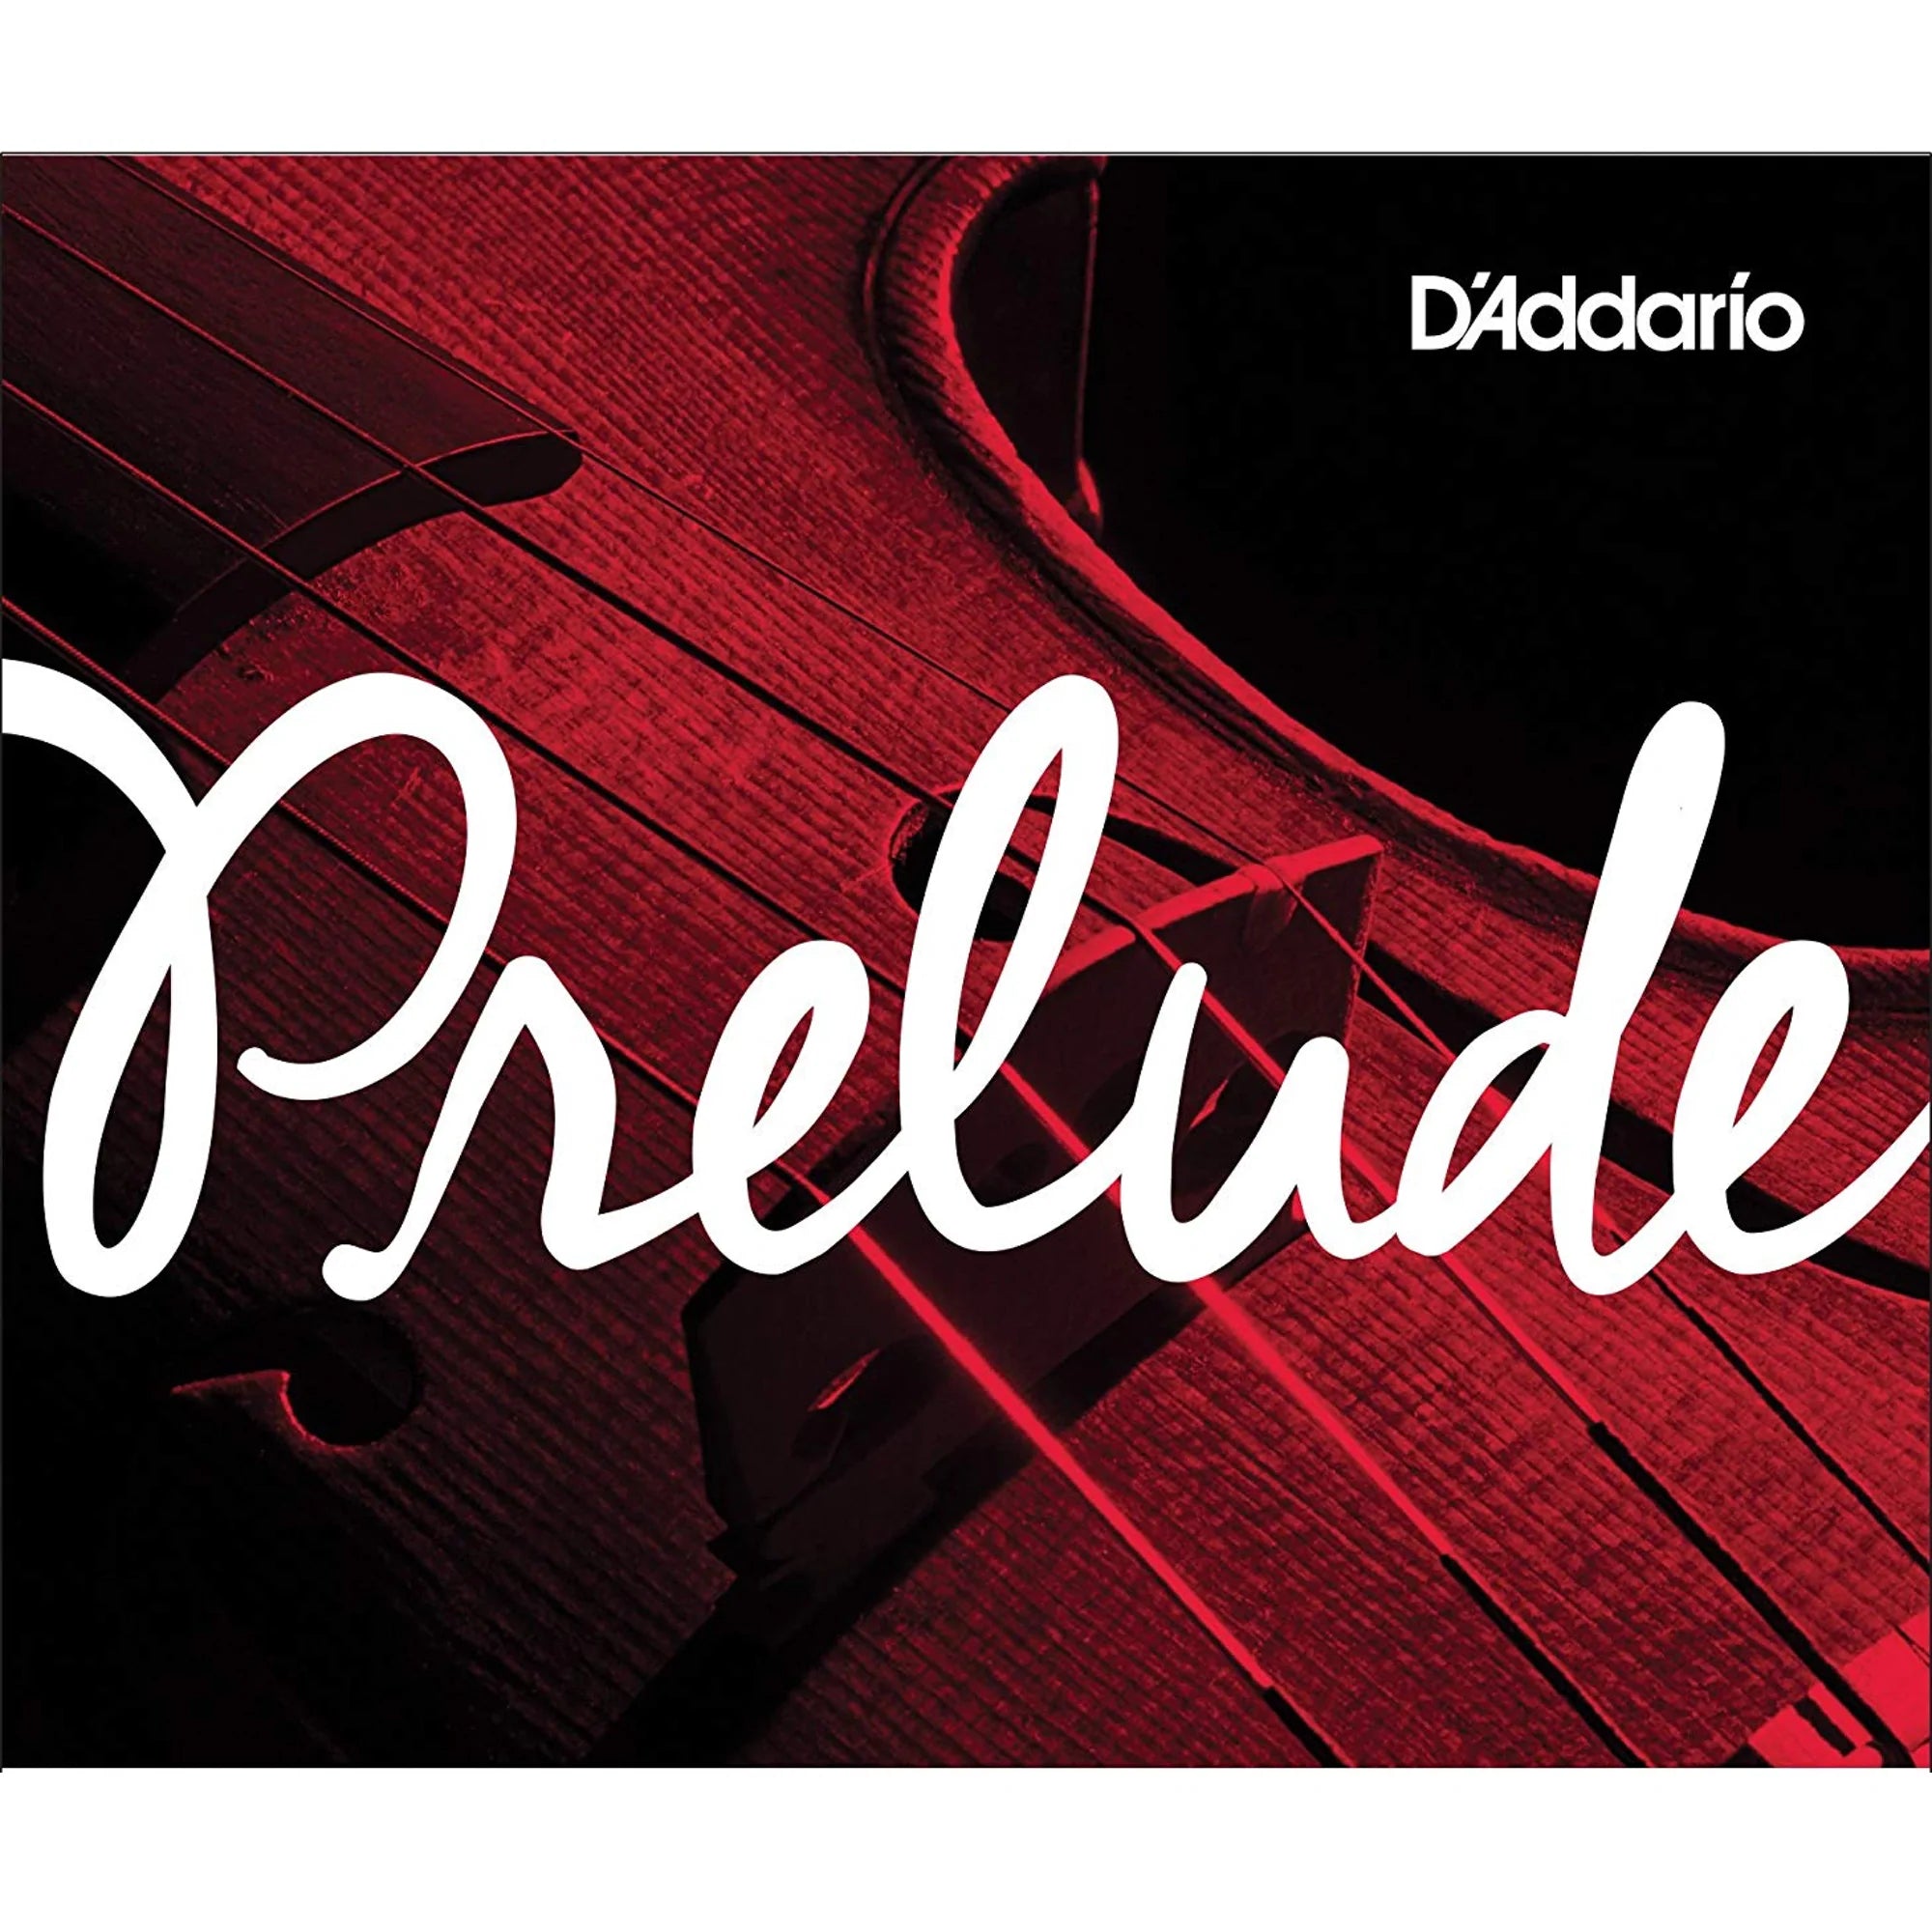 D'Addario - Prelude | Viola